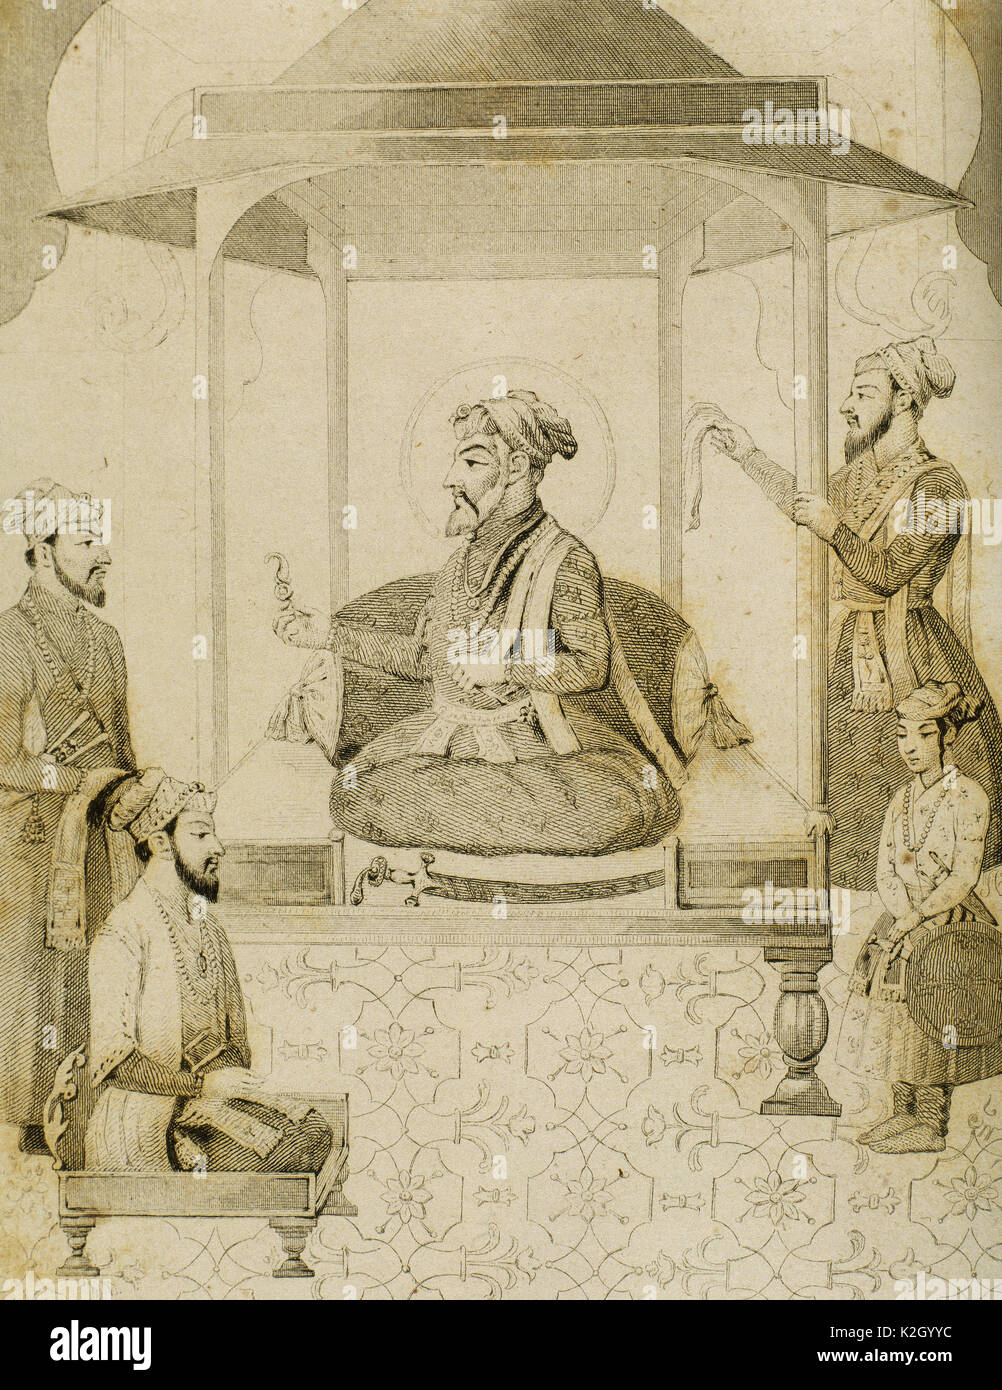 Shah Jahan I (1592-1666). Fünfte Mughal Emperador, der von 1628-1658 regierte. Er viele Denkmäler, die bekannteste davon in Betrieb genommen, das Taj Mahal in Agra, der seine Frau Mumtaz Mahal entombs. Sha Djahan geben einen Sitz zu Dara Shikoh (1615-1659), seinem ältesten Sohn. Indien. Kupferstich von Vernier. Lemaitre Direxit. "Panorama Universal, Indien, 1845. Stockfoto